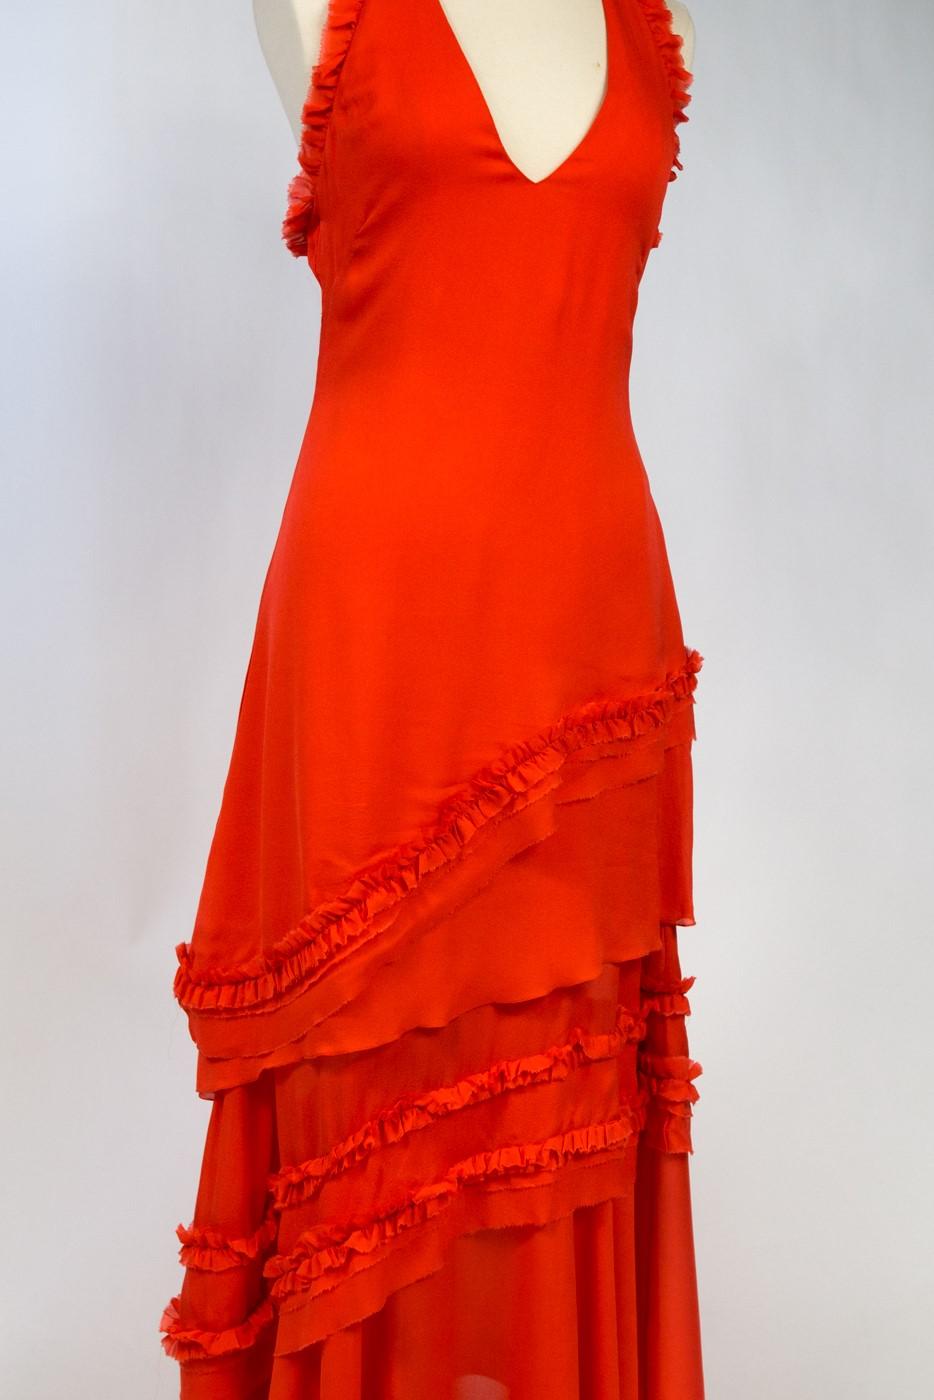 Vers 1997/2002

France

Magnifique robe de soirée de Thierry Mugler Haute Couture modèle 1P 2730 datant des années 2000. Robe longue en crêpe de soie corail, dos nu et décolleté en V plongeant boutonné derrière le cou. Robe fourreau ajustée avec